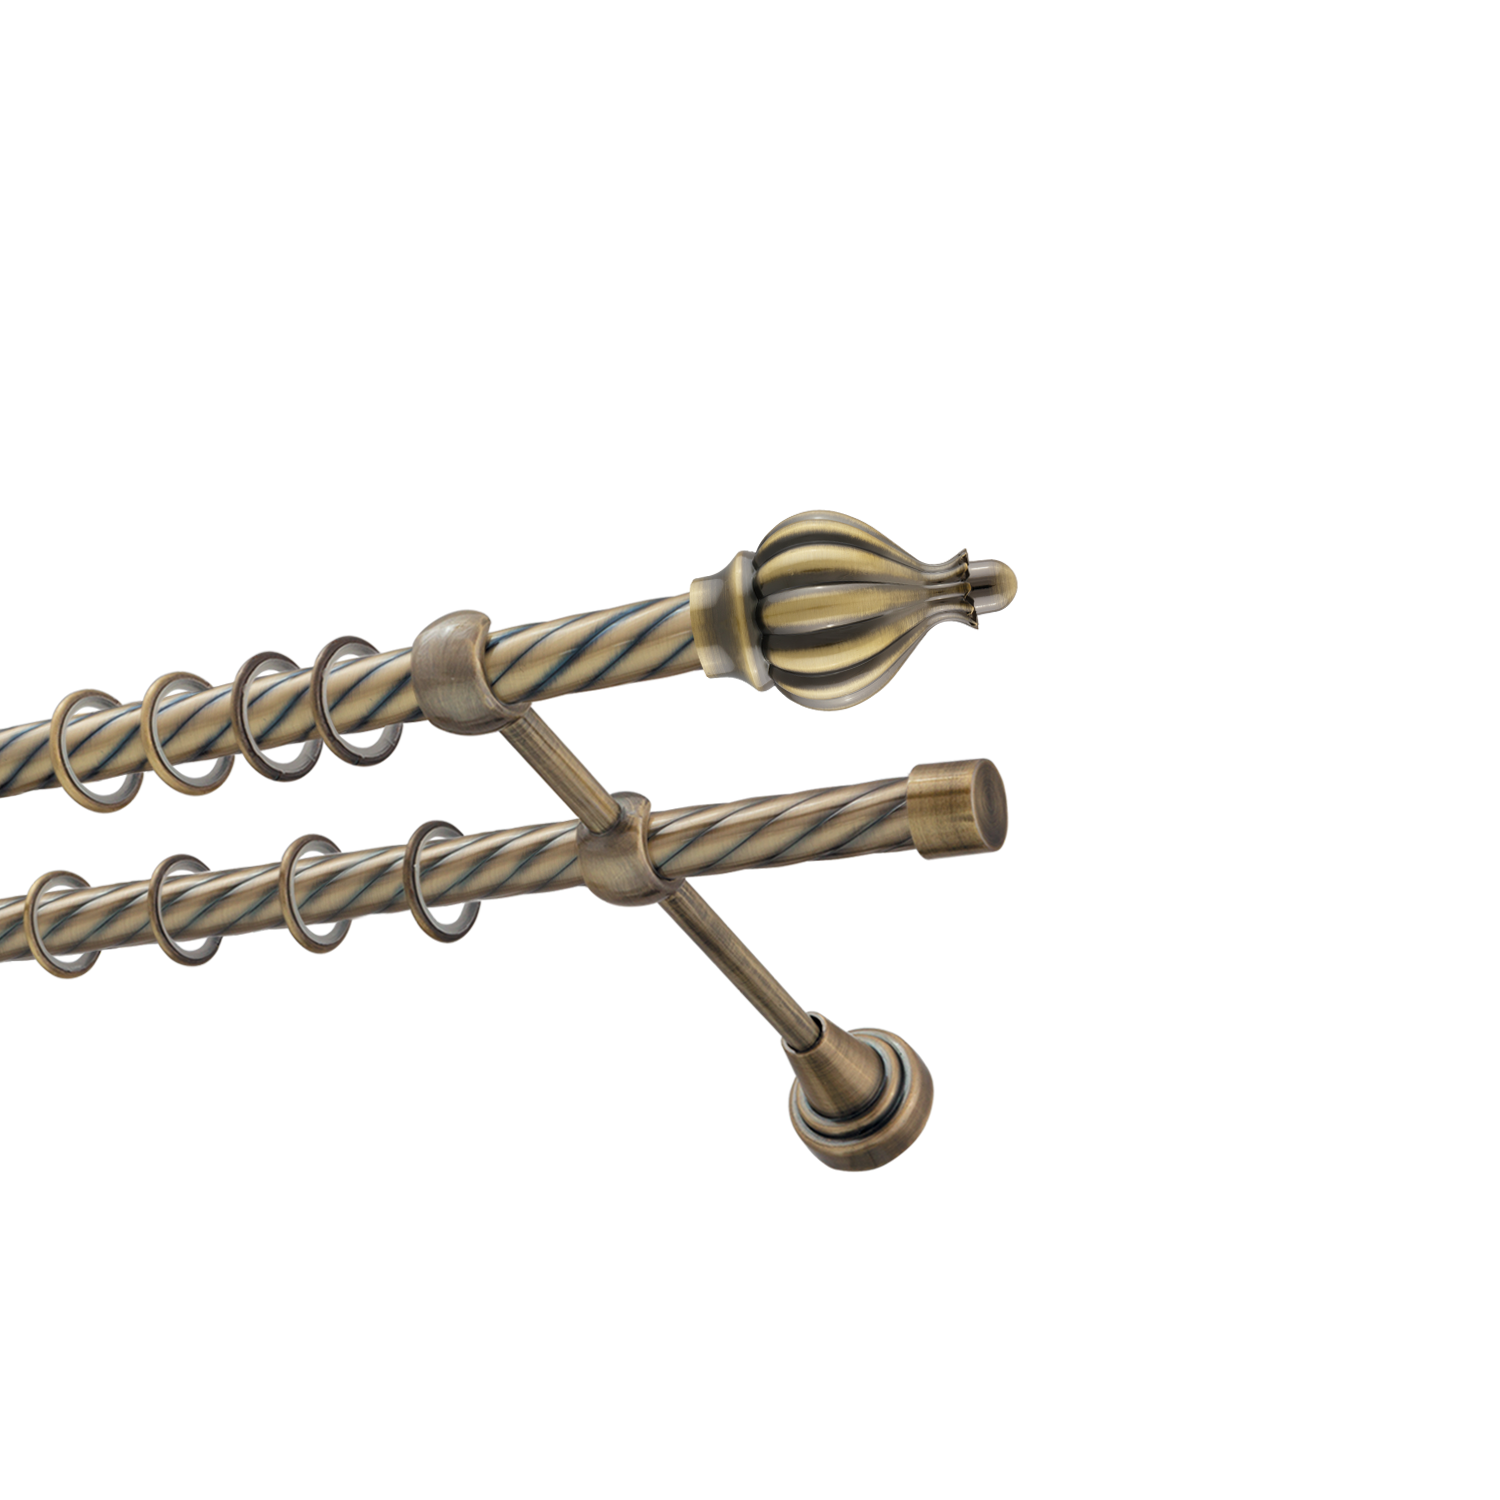 Металлический карниз для штор Афродита, двухрядный 16/16 мм, бронза, витая штанга, длина 180 см - фото Wikidecor.ru